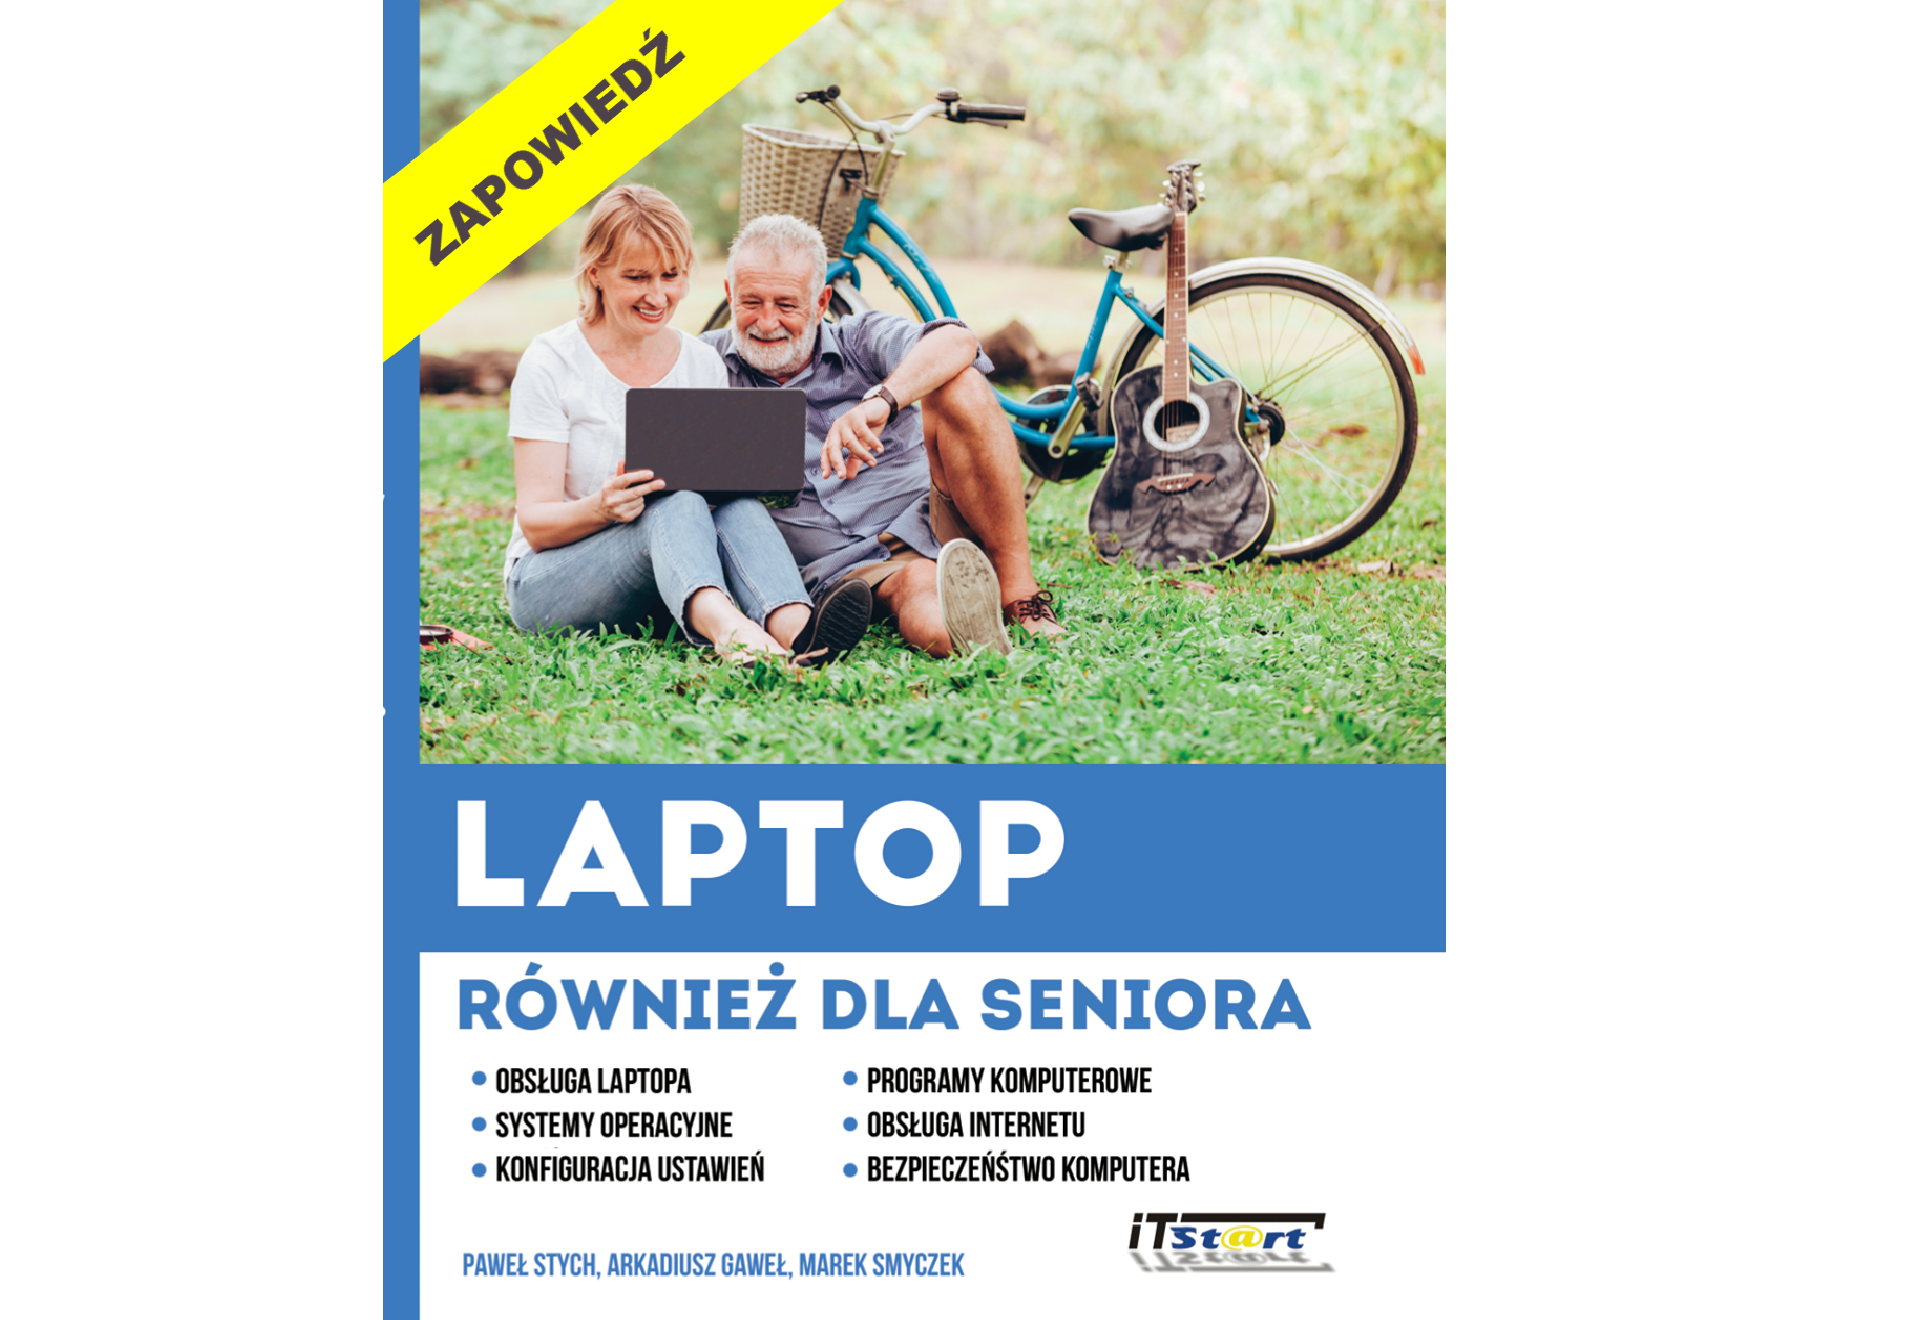 Poradnik Laptop również dla seniora – zapowiedź wydawnicza